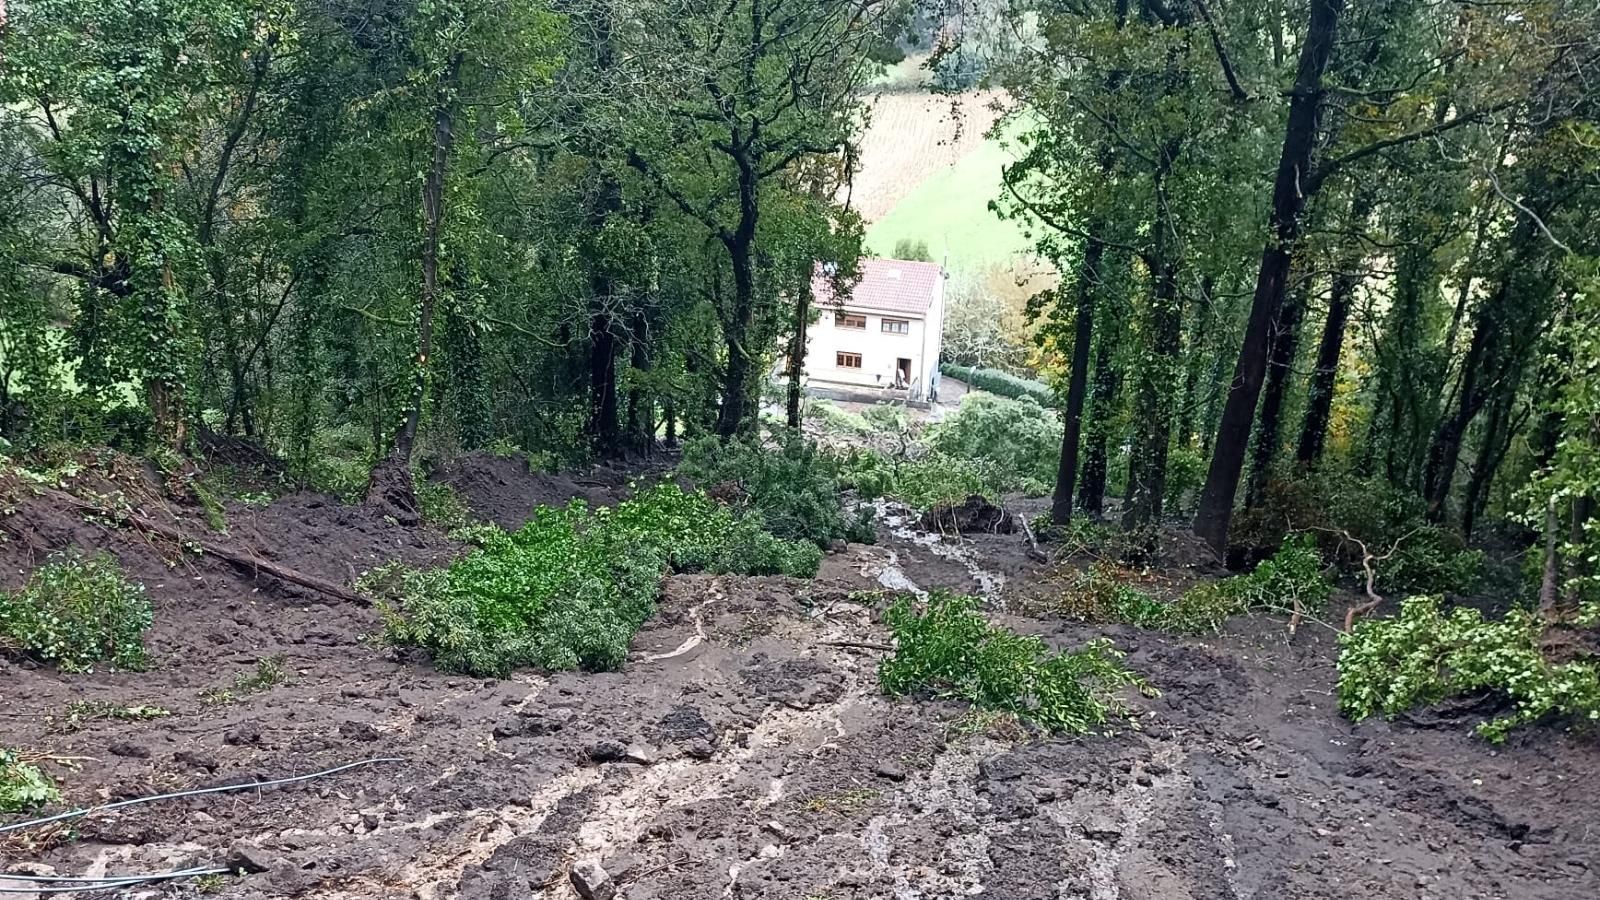 Desprendimiento de tierras en Dumbría. Al fondo se ve la casa cuyo garaje fue sepultado